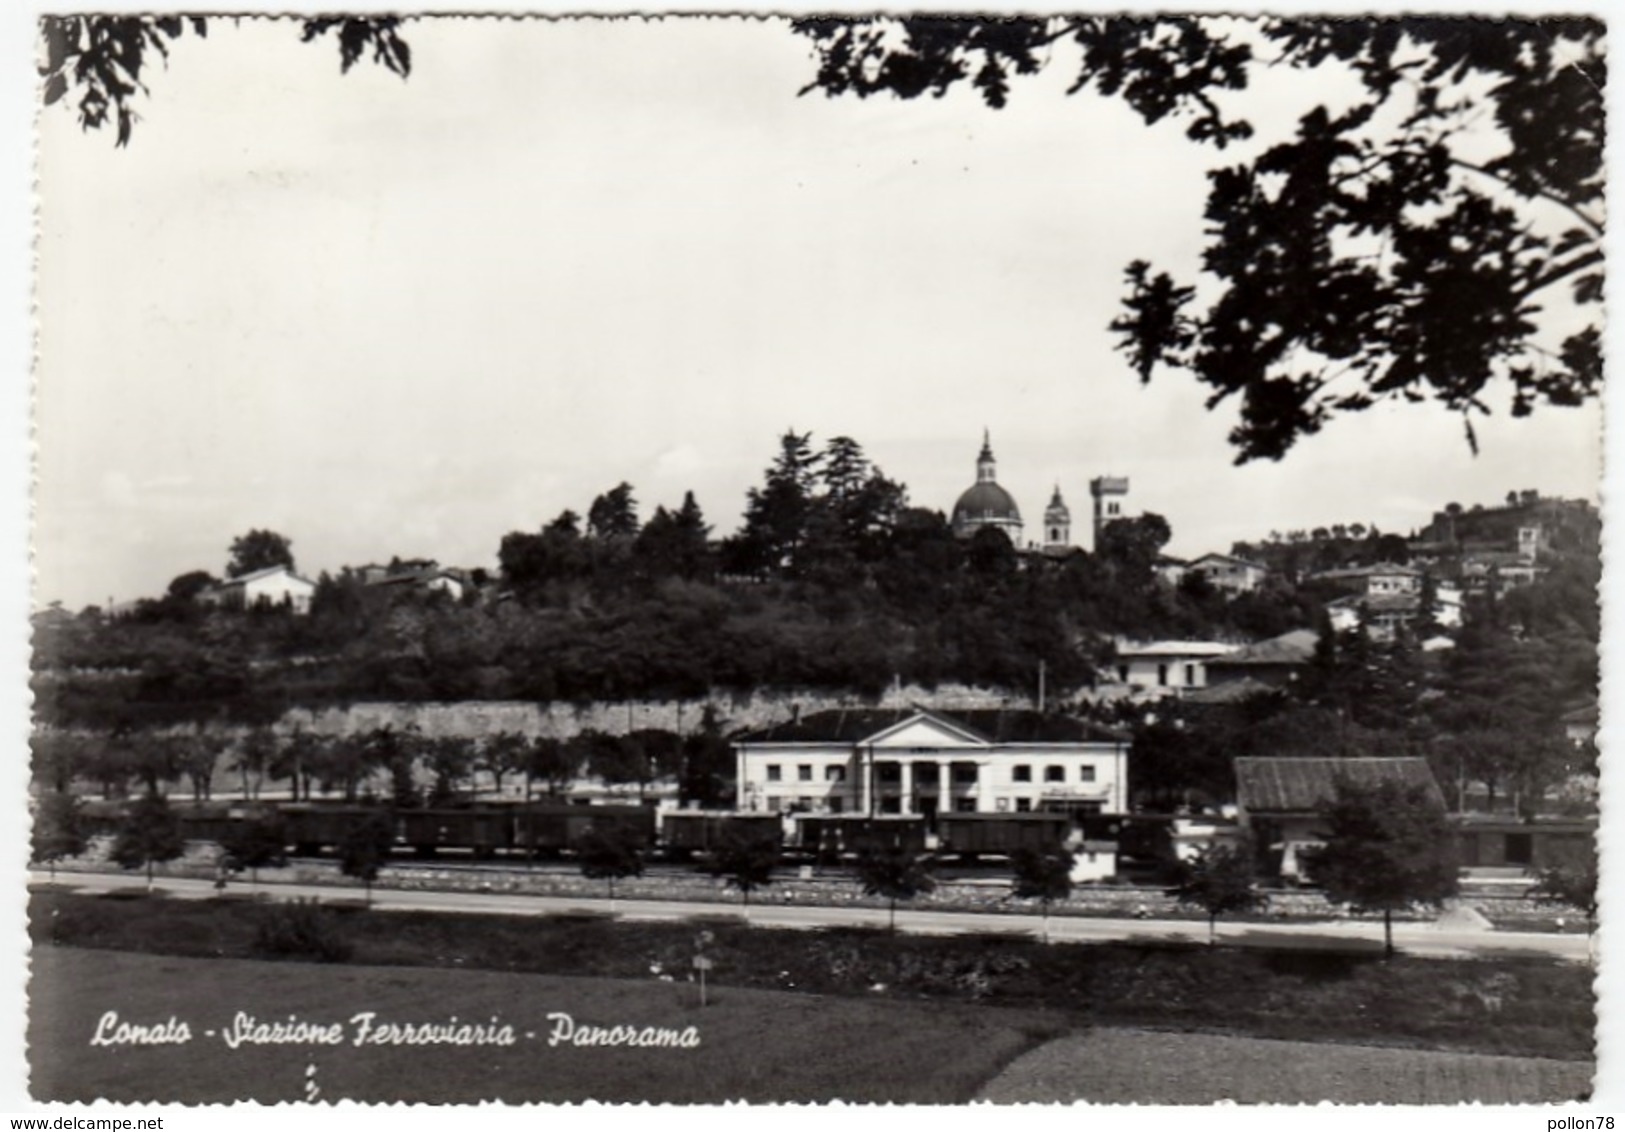 LONATO - STAZIONE FERROVIARIA - PANORAMA - BRESCIA - 1962 - Brescia